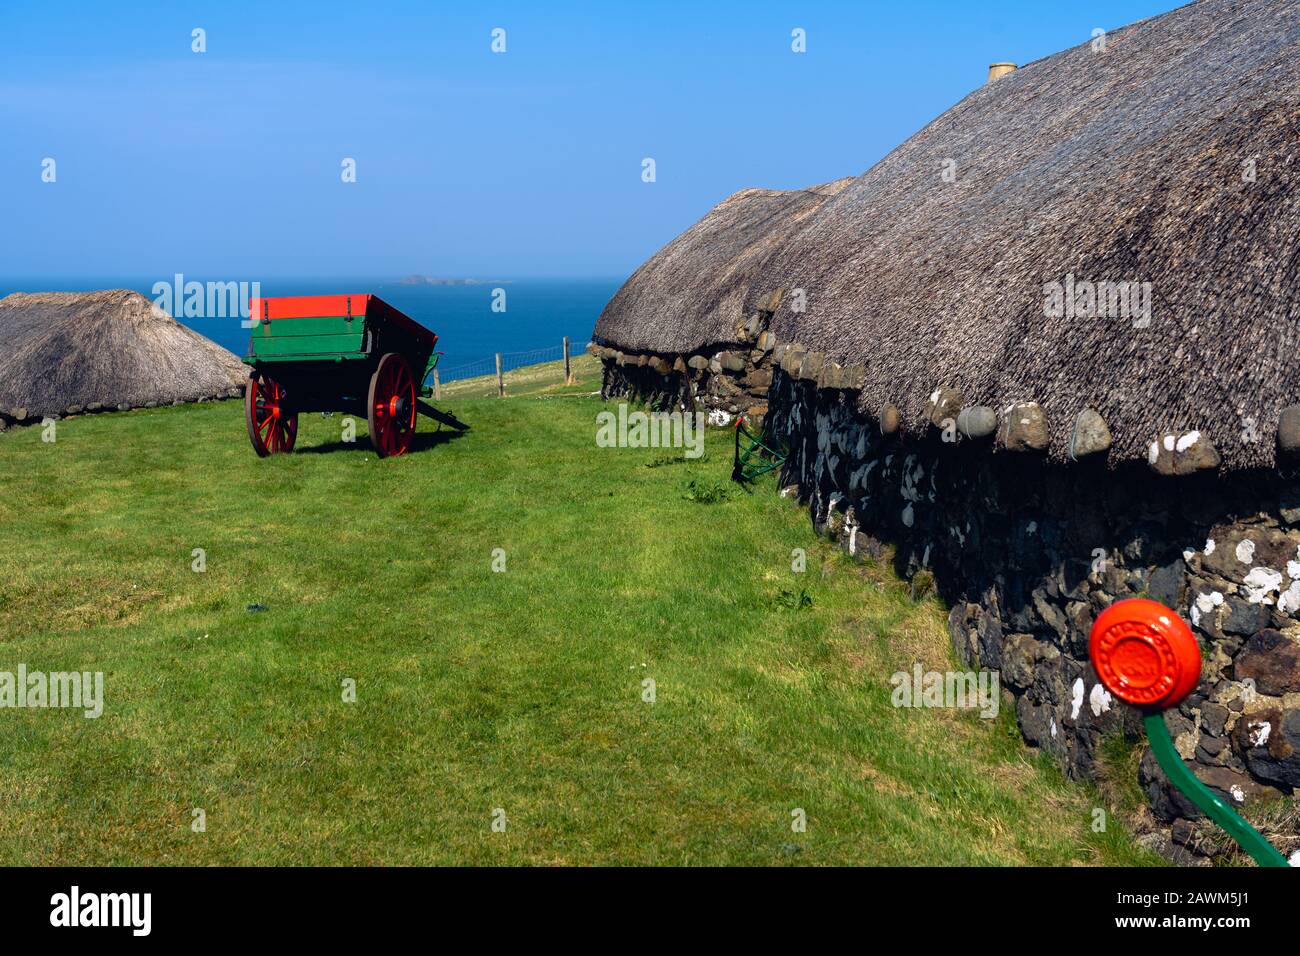 Insel Skye: Museum mit alten Hütten und Karren in der Natur in der Nähe des Ozeans mit dramatischem Himmel. Typisch für die Insel Skye Stockfoto